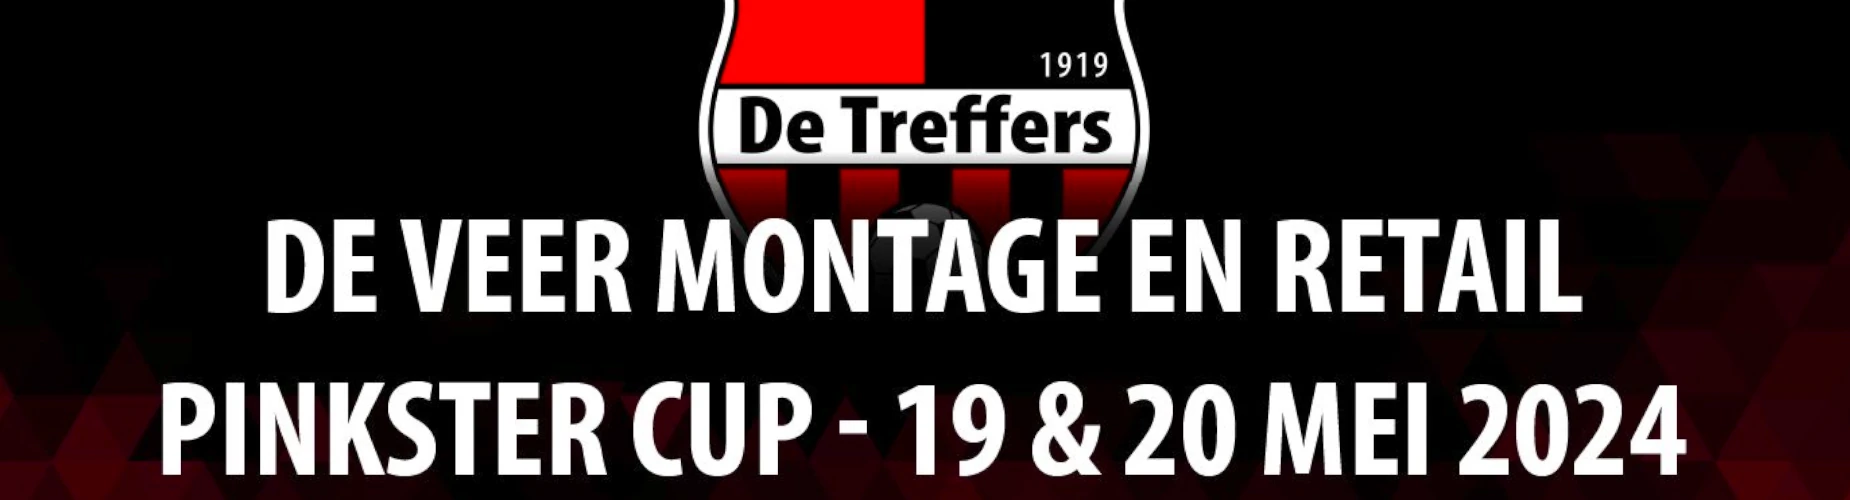 Banner - De Veer Montage en Retail Pinkster Cup - De Treffers - Groesbeek